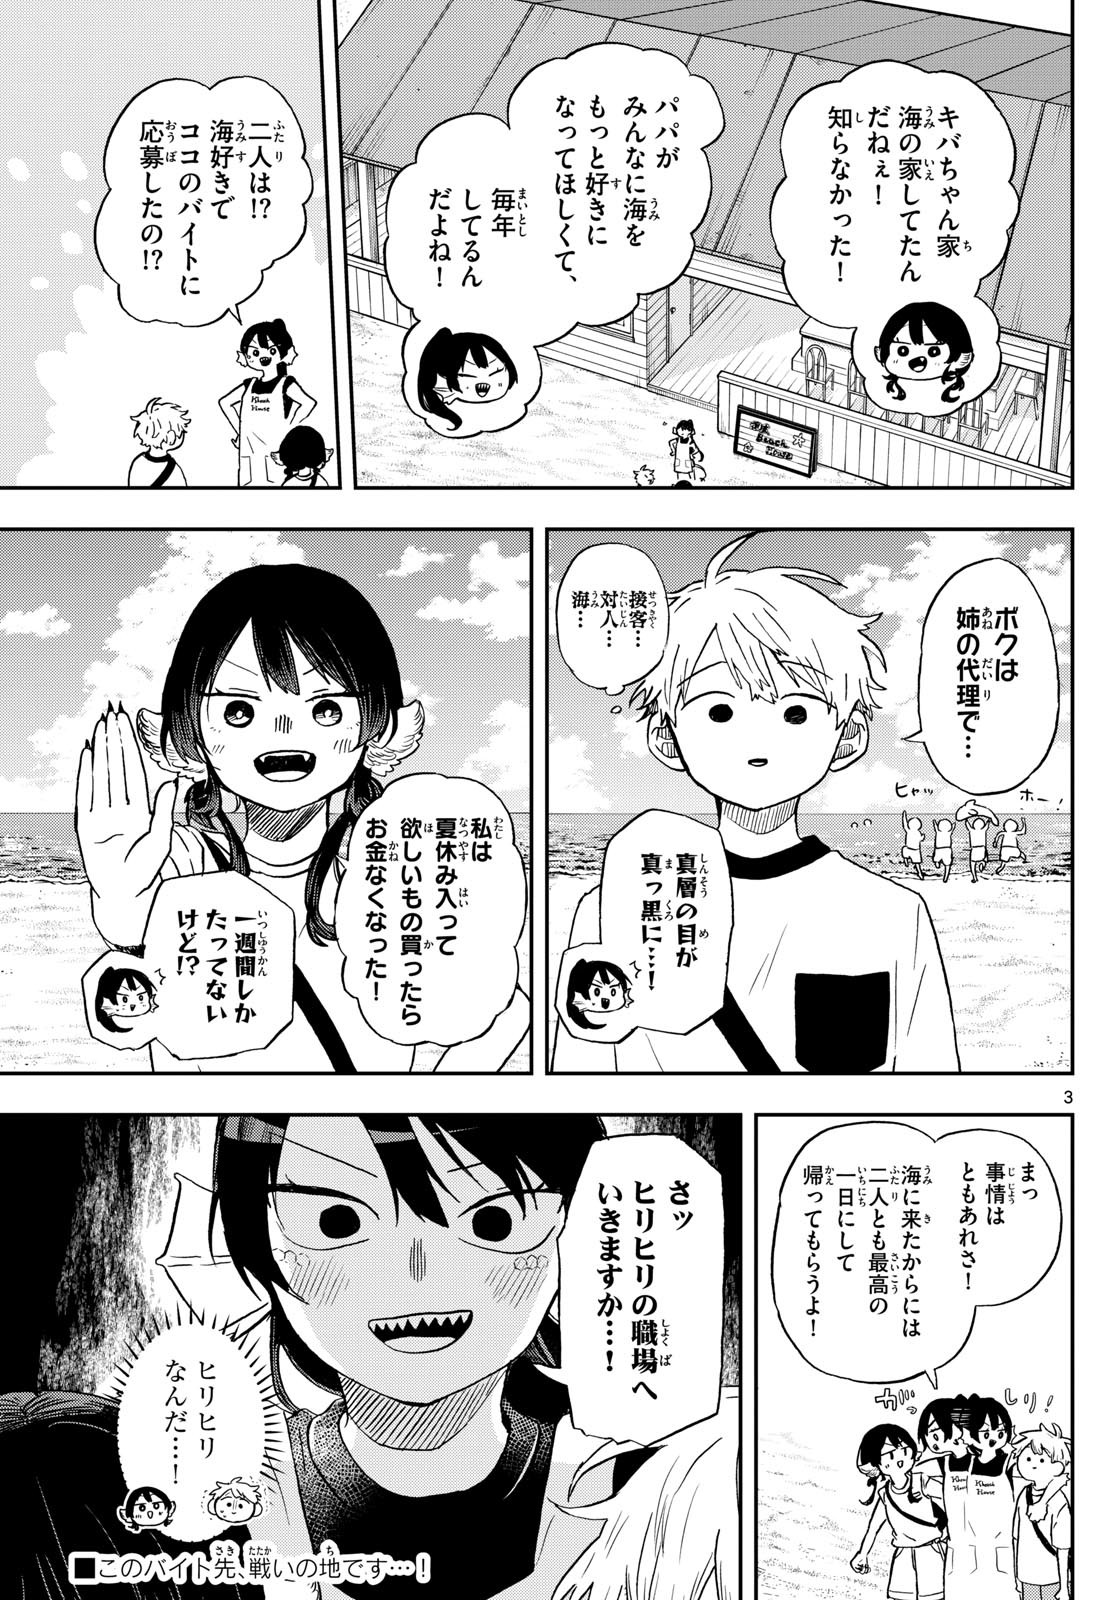 Omori Tsumiki to Kinichijou. - Chapter 21 - Page 3